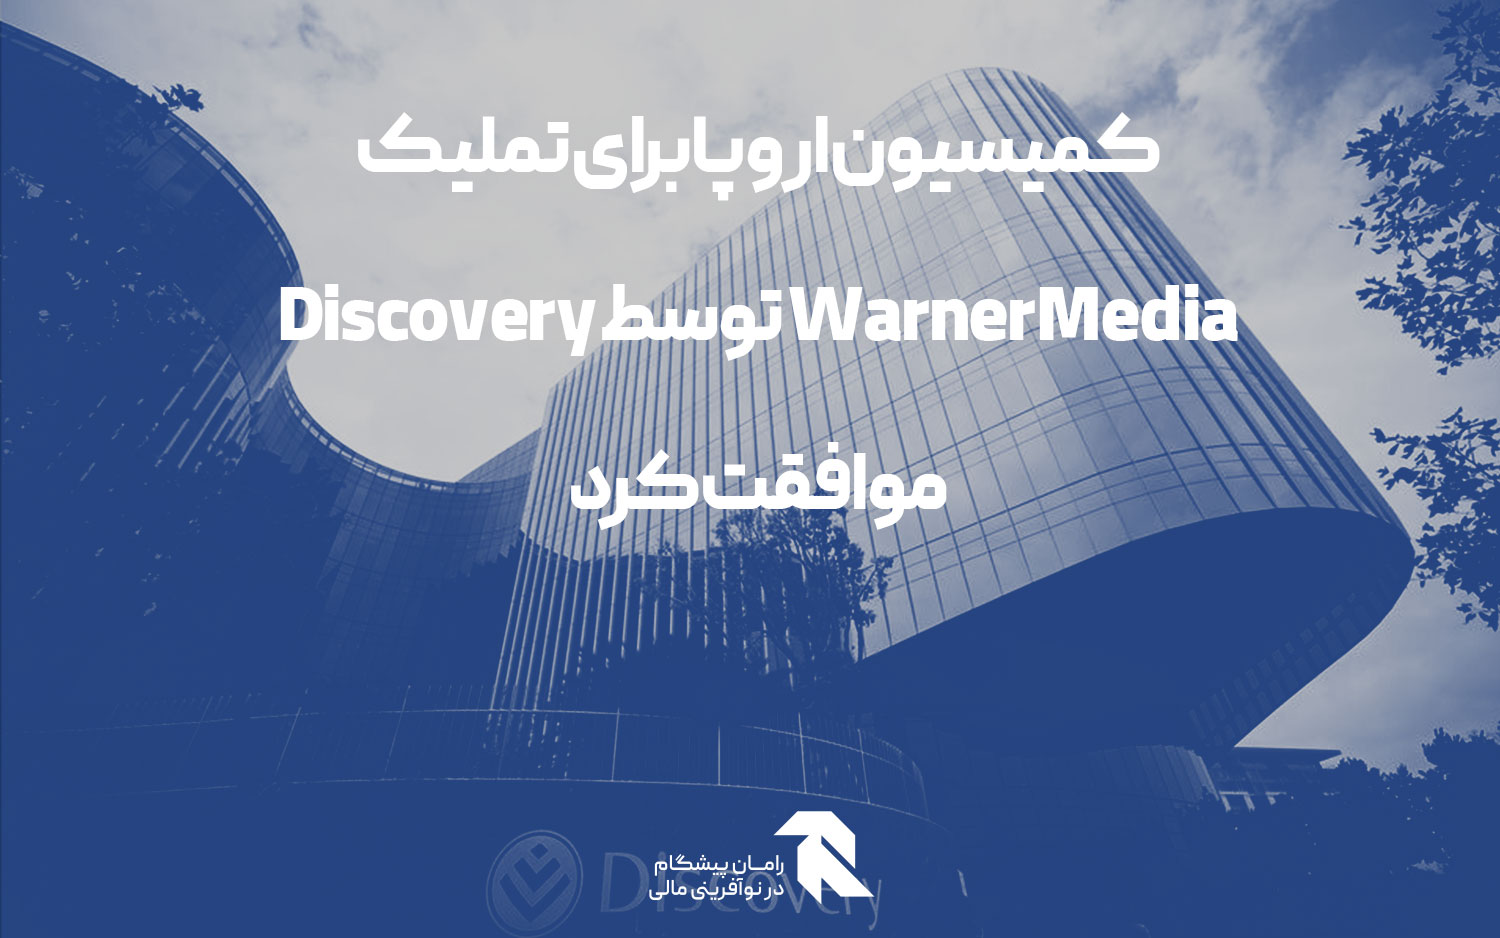 کمیسیون اروپا برای تملیک WarnerMedia توسط Discovery موافقت کرد